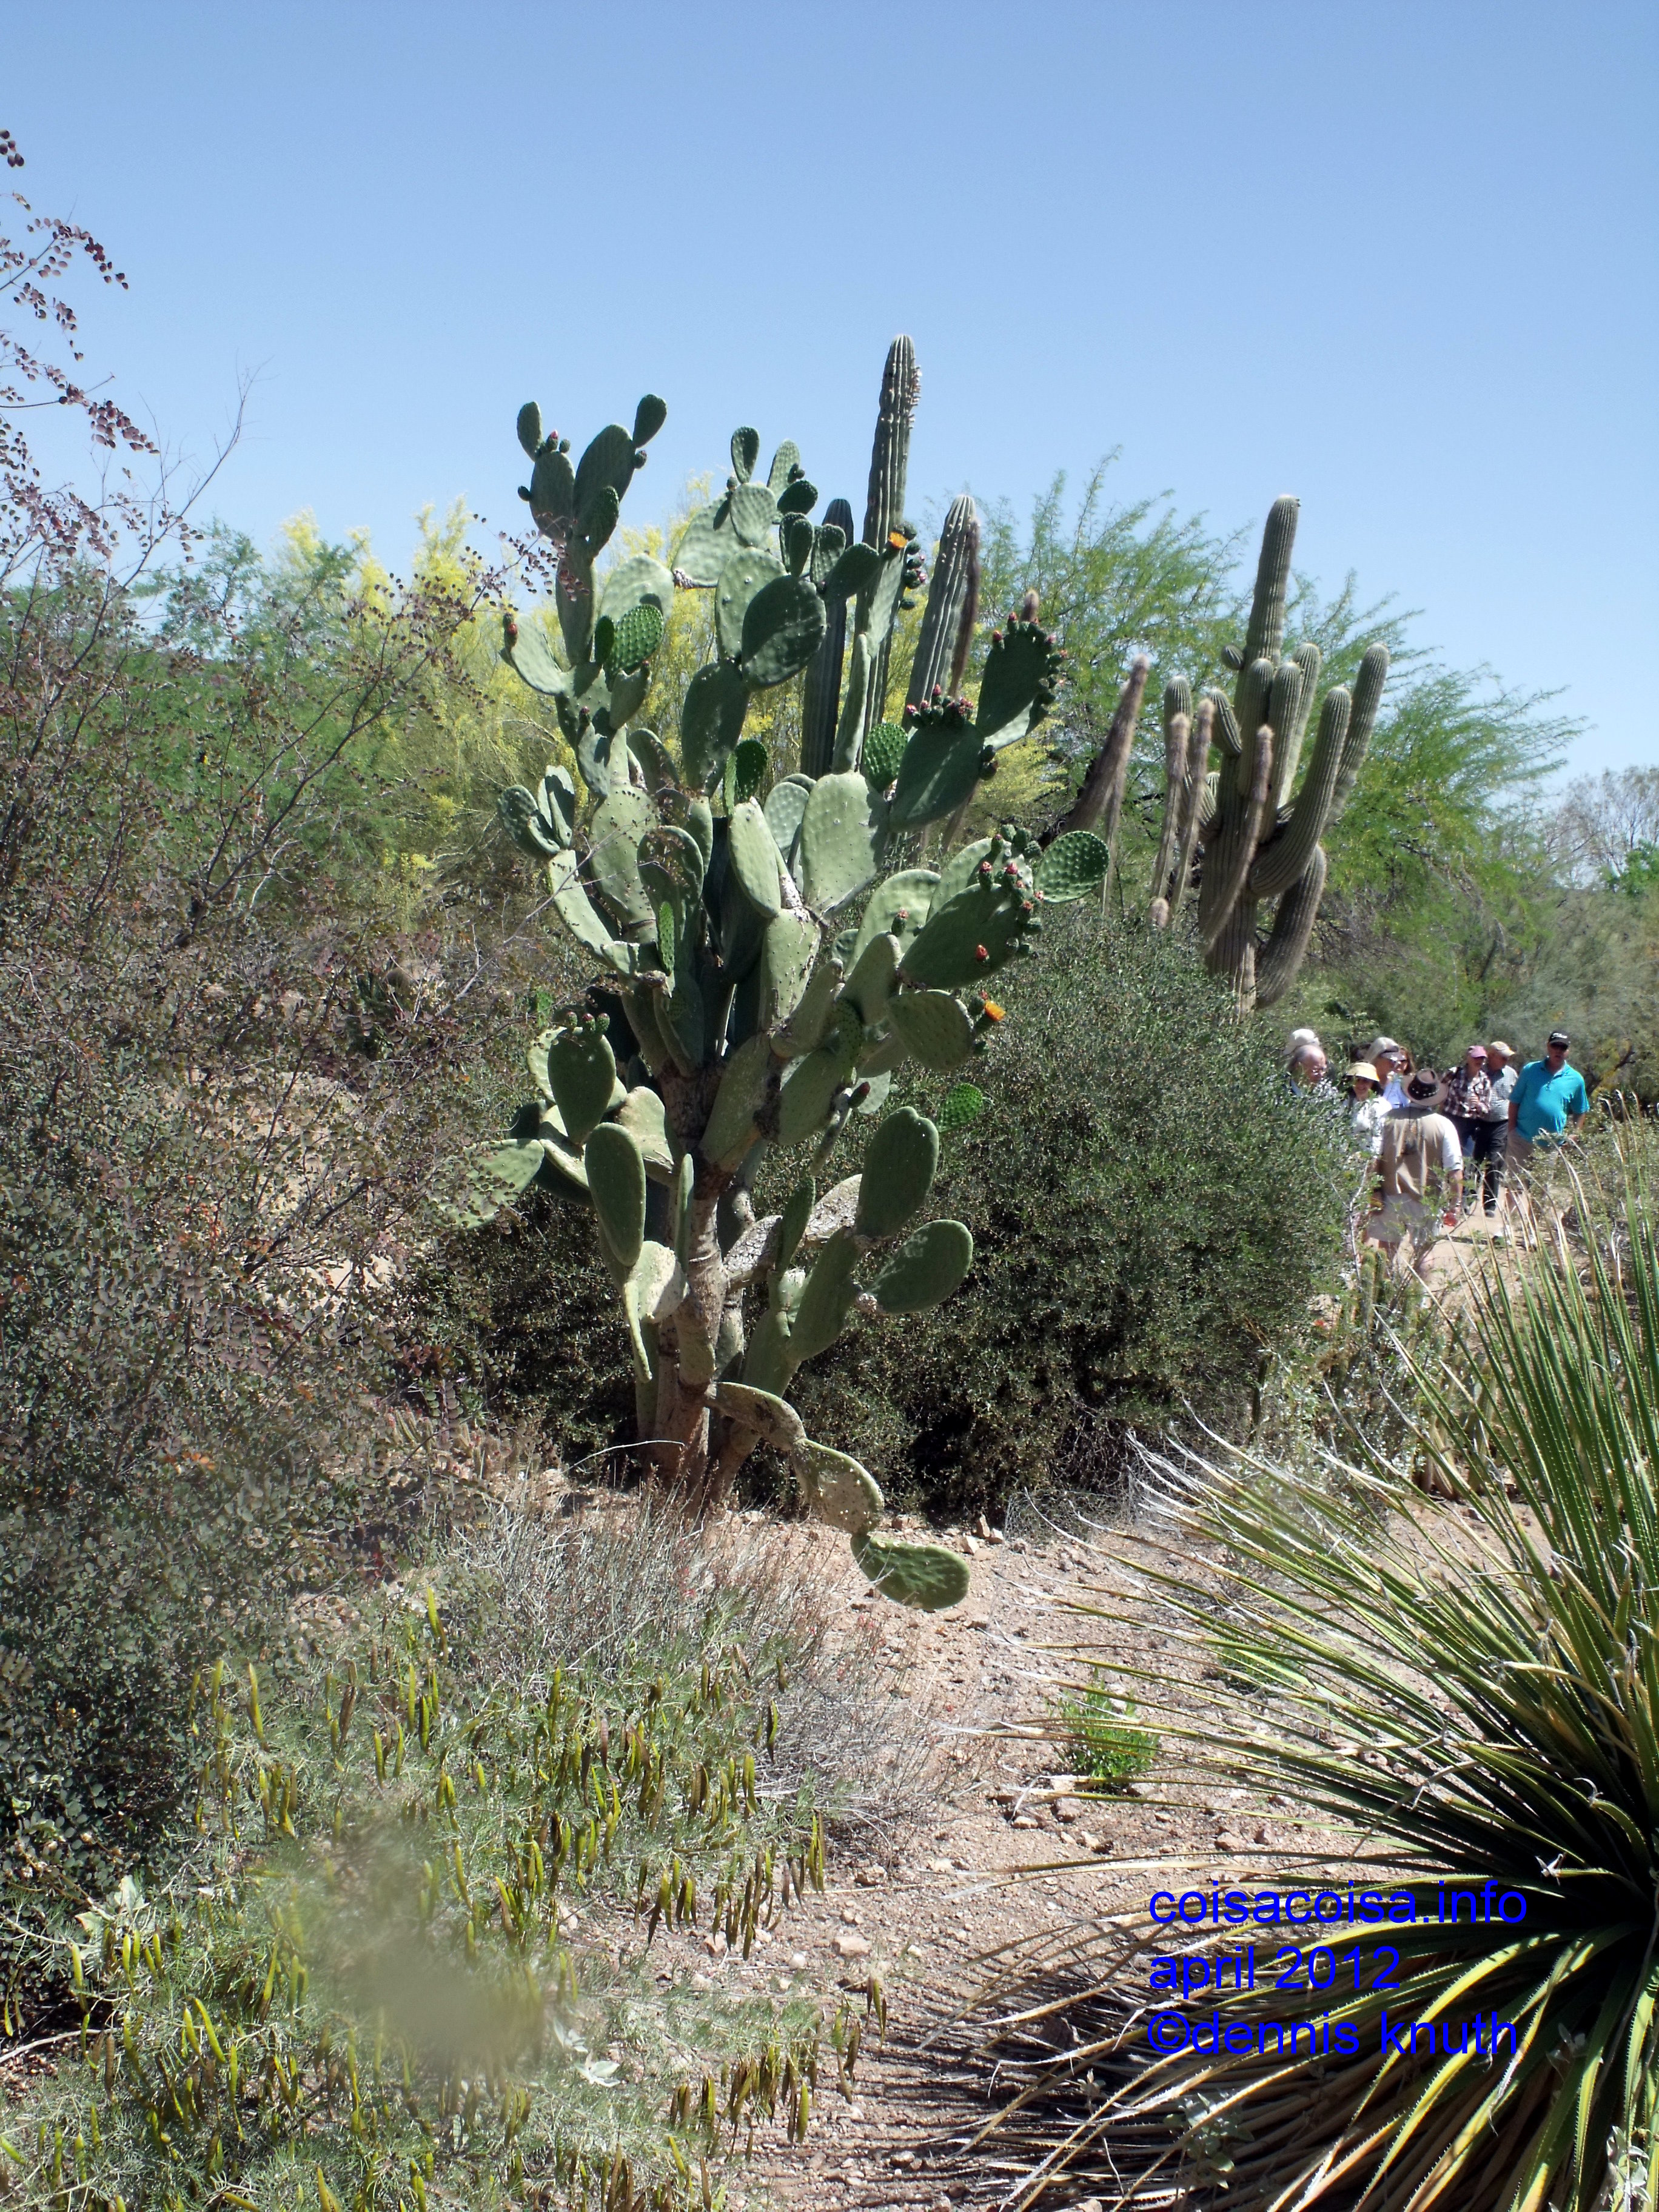 Phoenix Botanical gardens have carefully managed flora